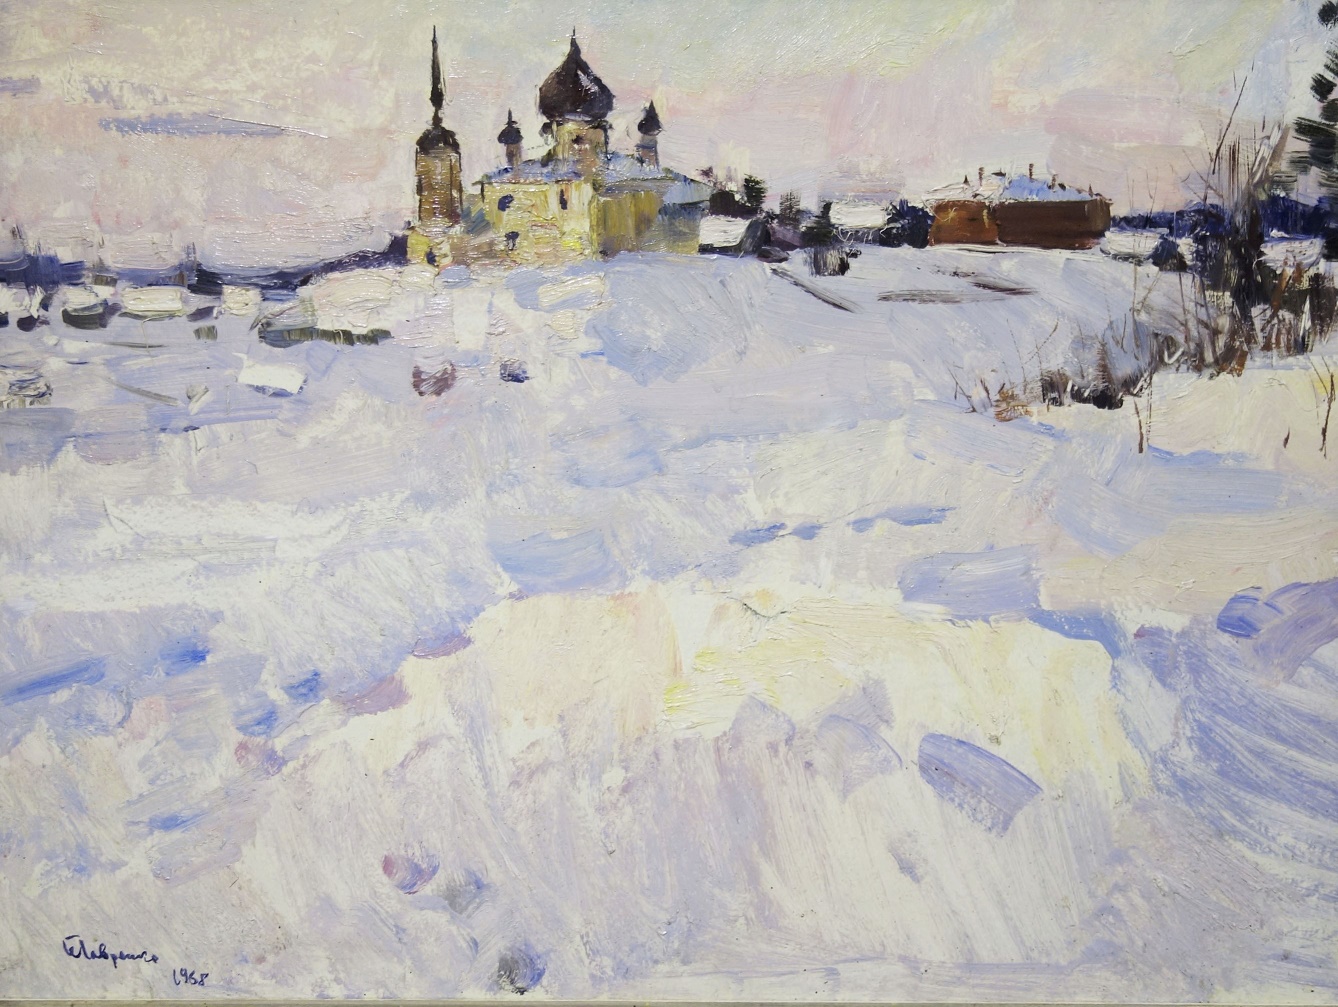 Lavrenko, pittura russa, neve, monastero, paesaggio